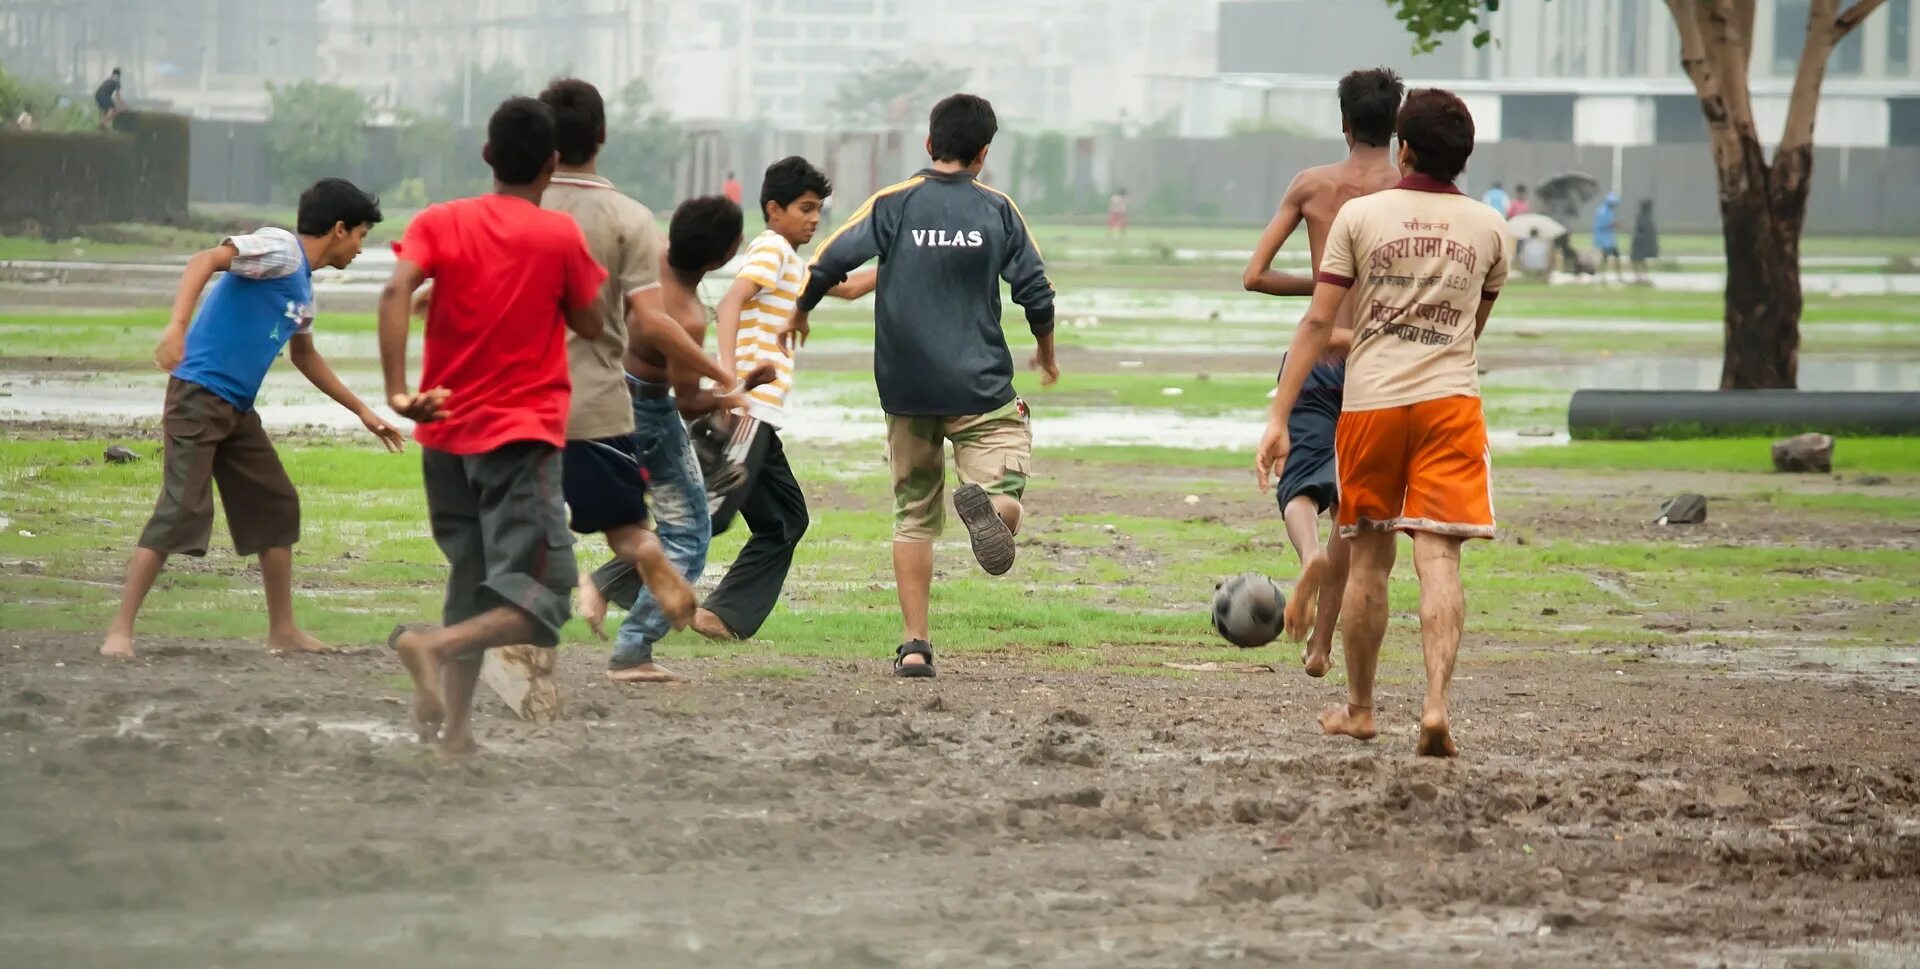 Игры в дождь в лагере. Футбол под дождем. Мальчик. Фото мальчик играет в футбол.